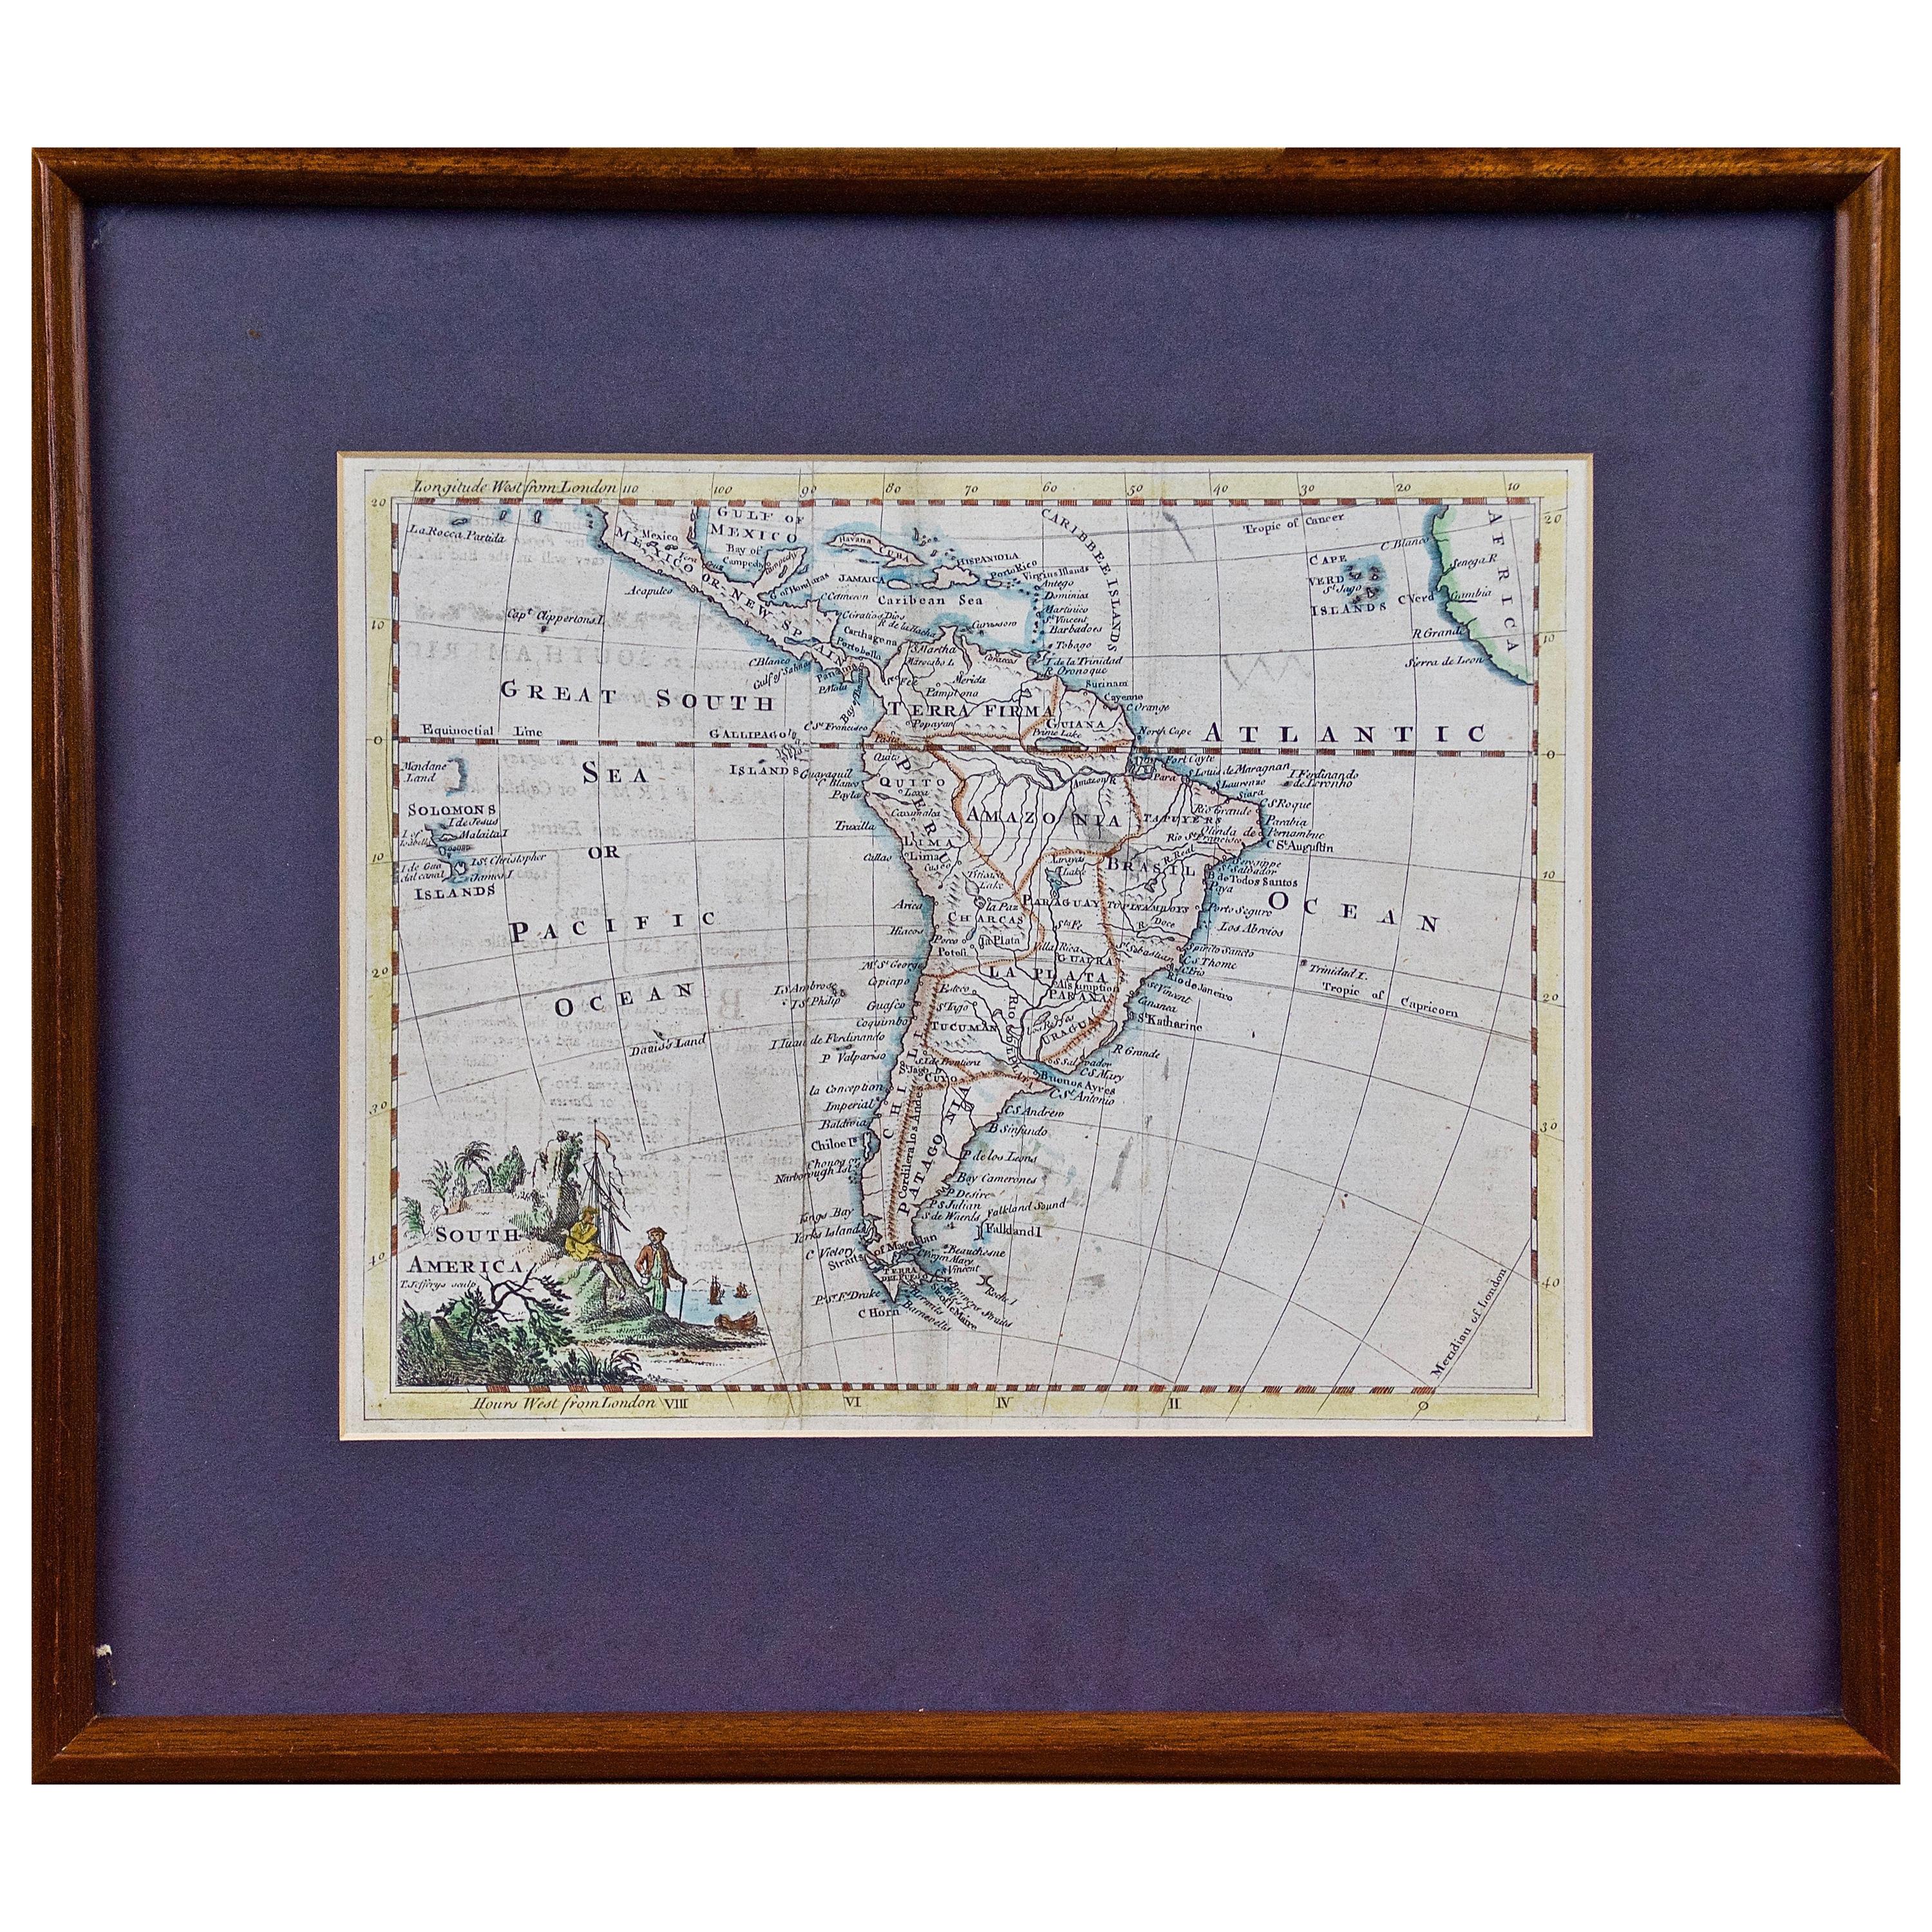 Amérique du Sud : Carte encadrée colorée à la main du 18e siècle par Thomas Jefferys